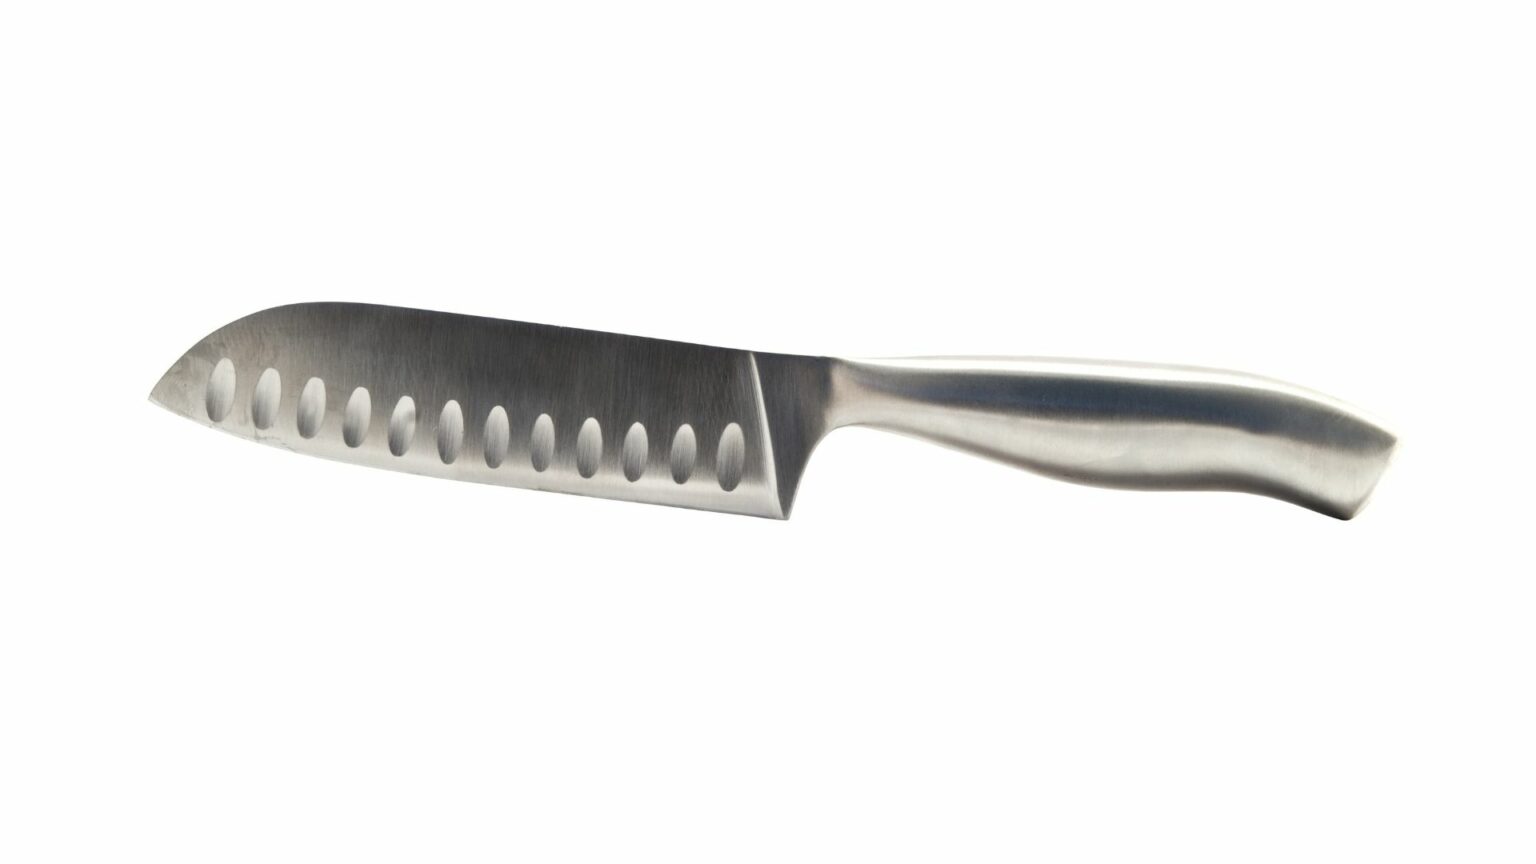 Fish slicer knives